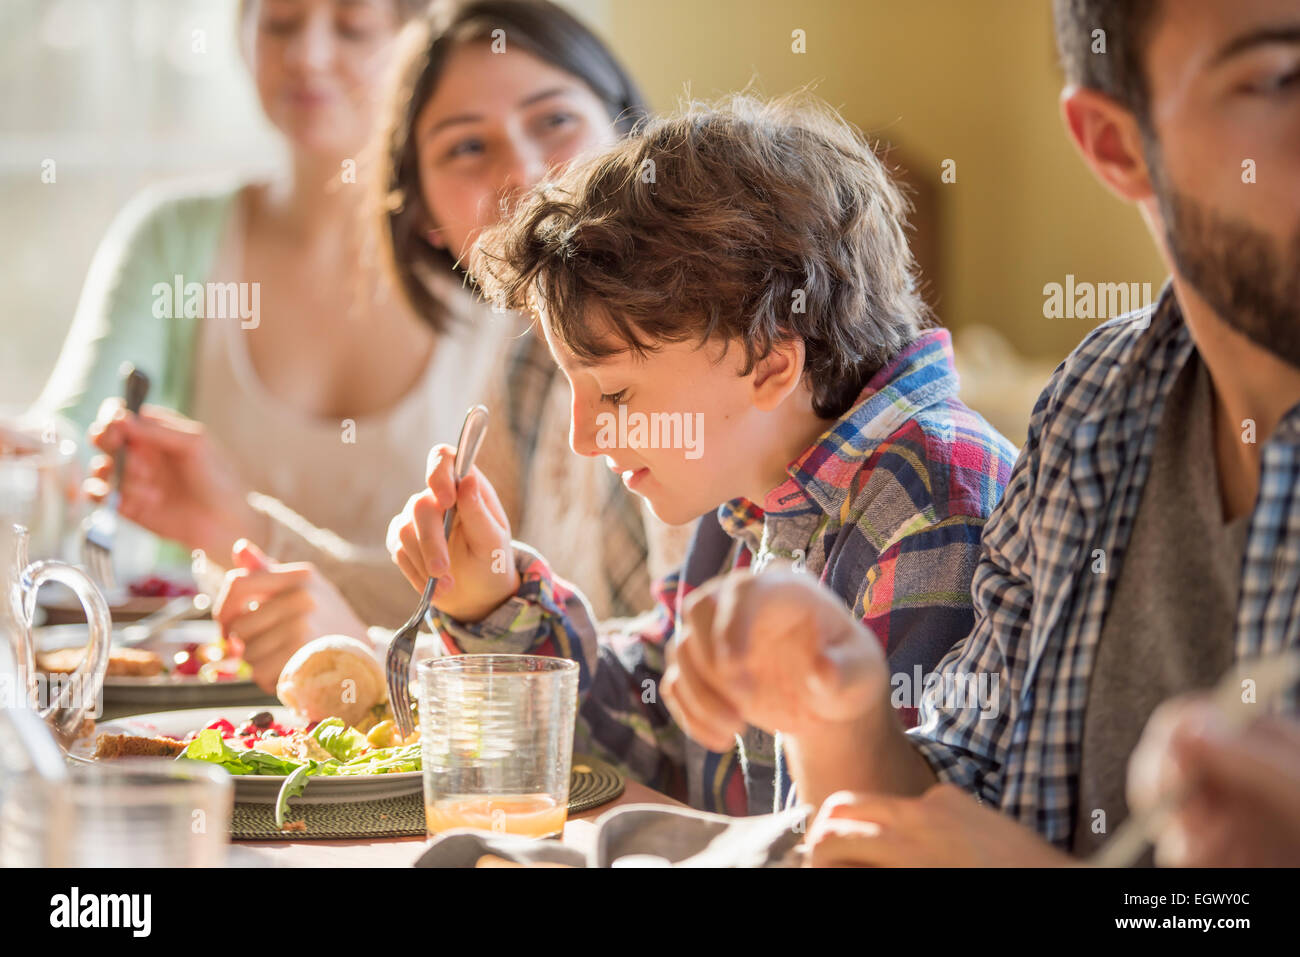 Un grupo de personas, adultos y niños, sentados alrededor de una mesa para comer. Foto de stock